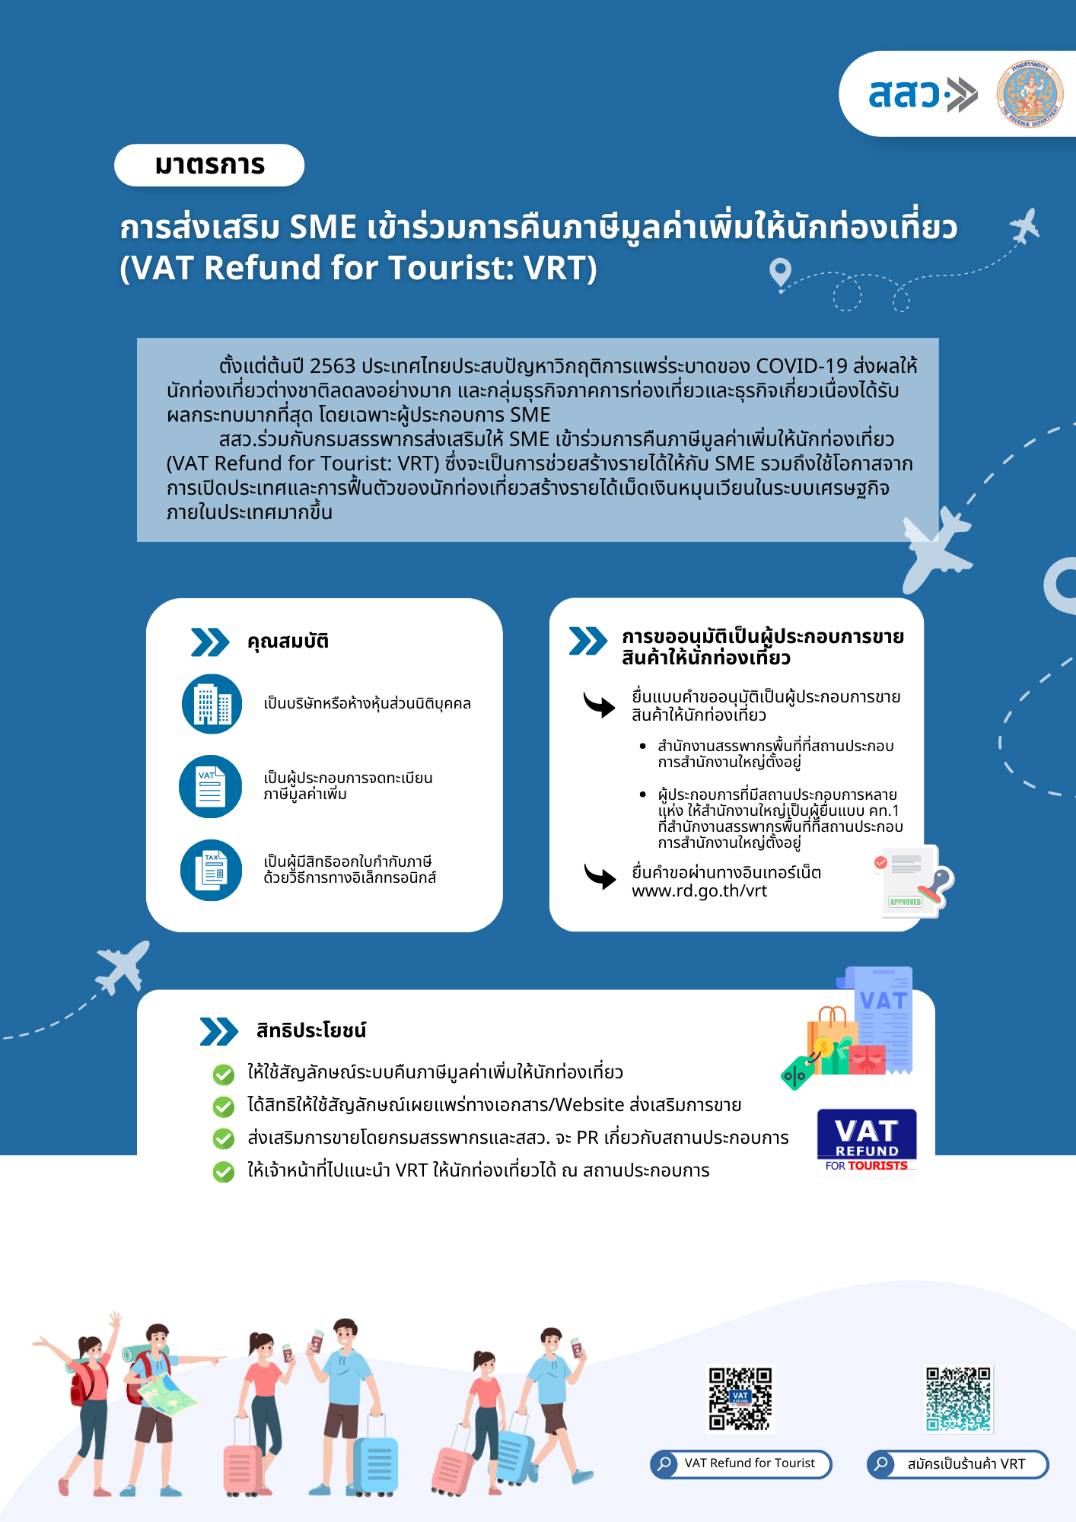 มาตรการการส่งเสริม SME เข้าร่วมการคืนภาษีมูลค่าเพิ่มให้นักท่องเที่ยว (VAT Refund for Tourist : VRT)